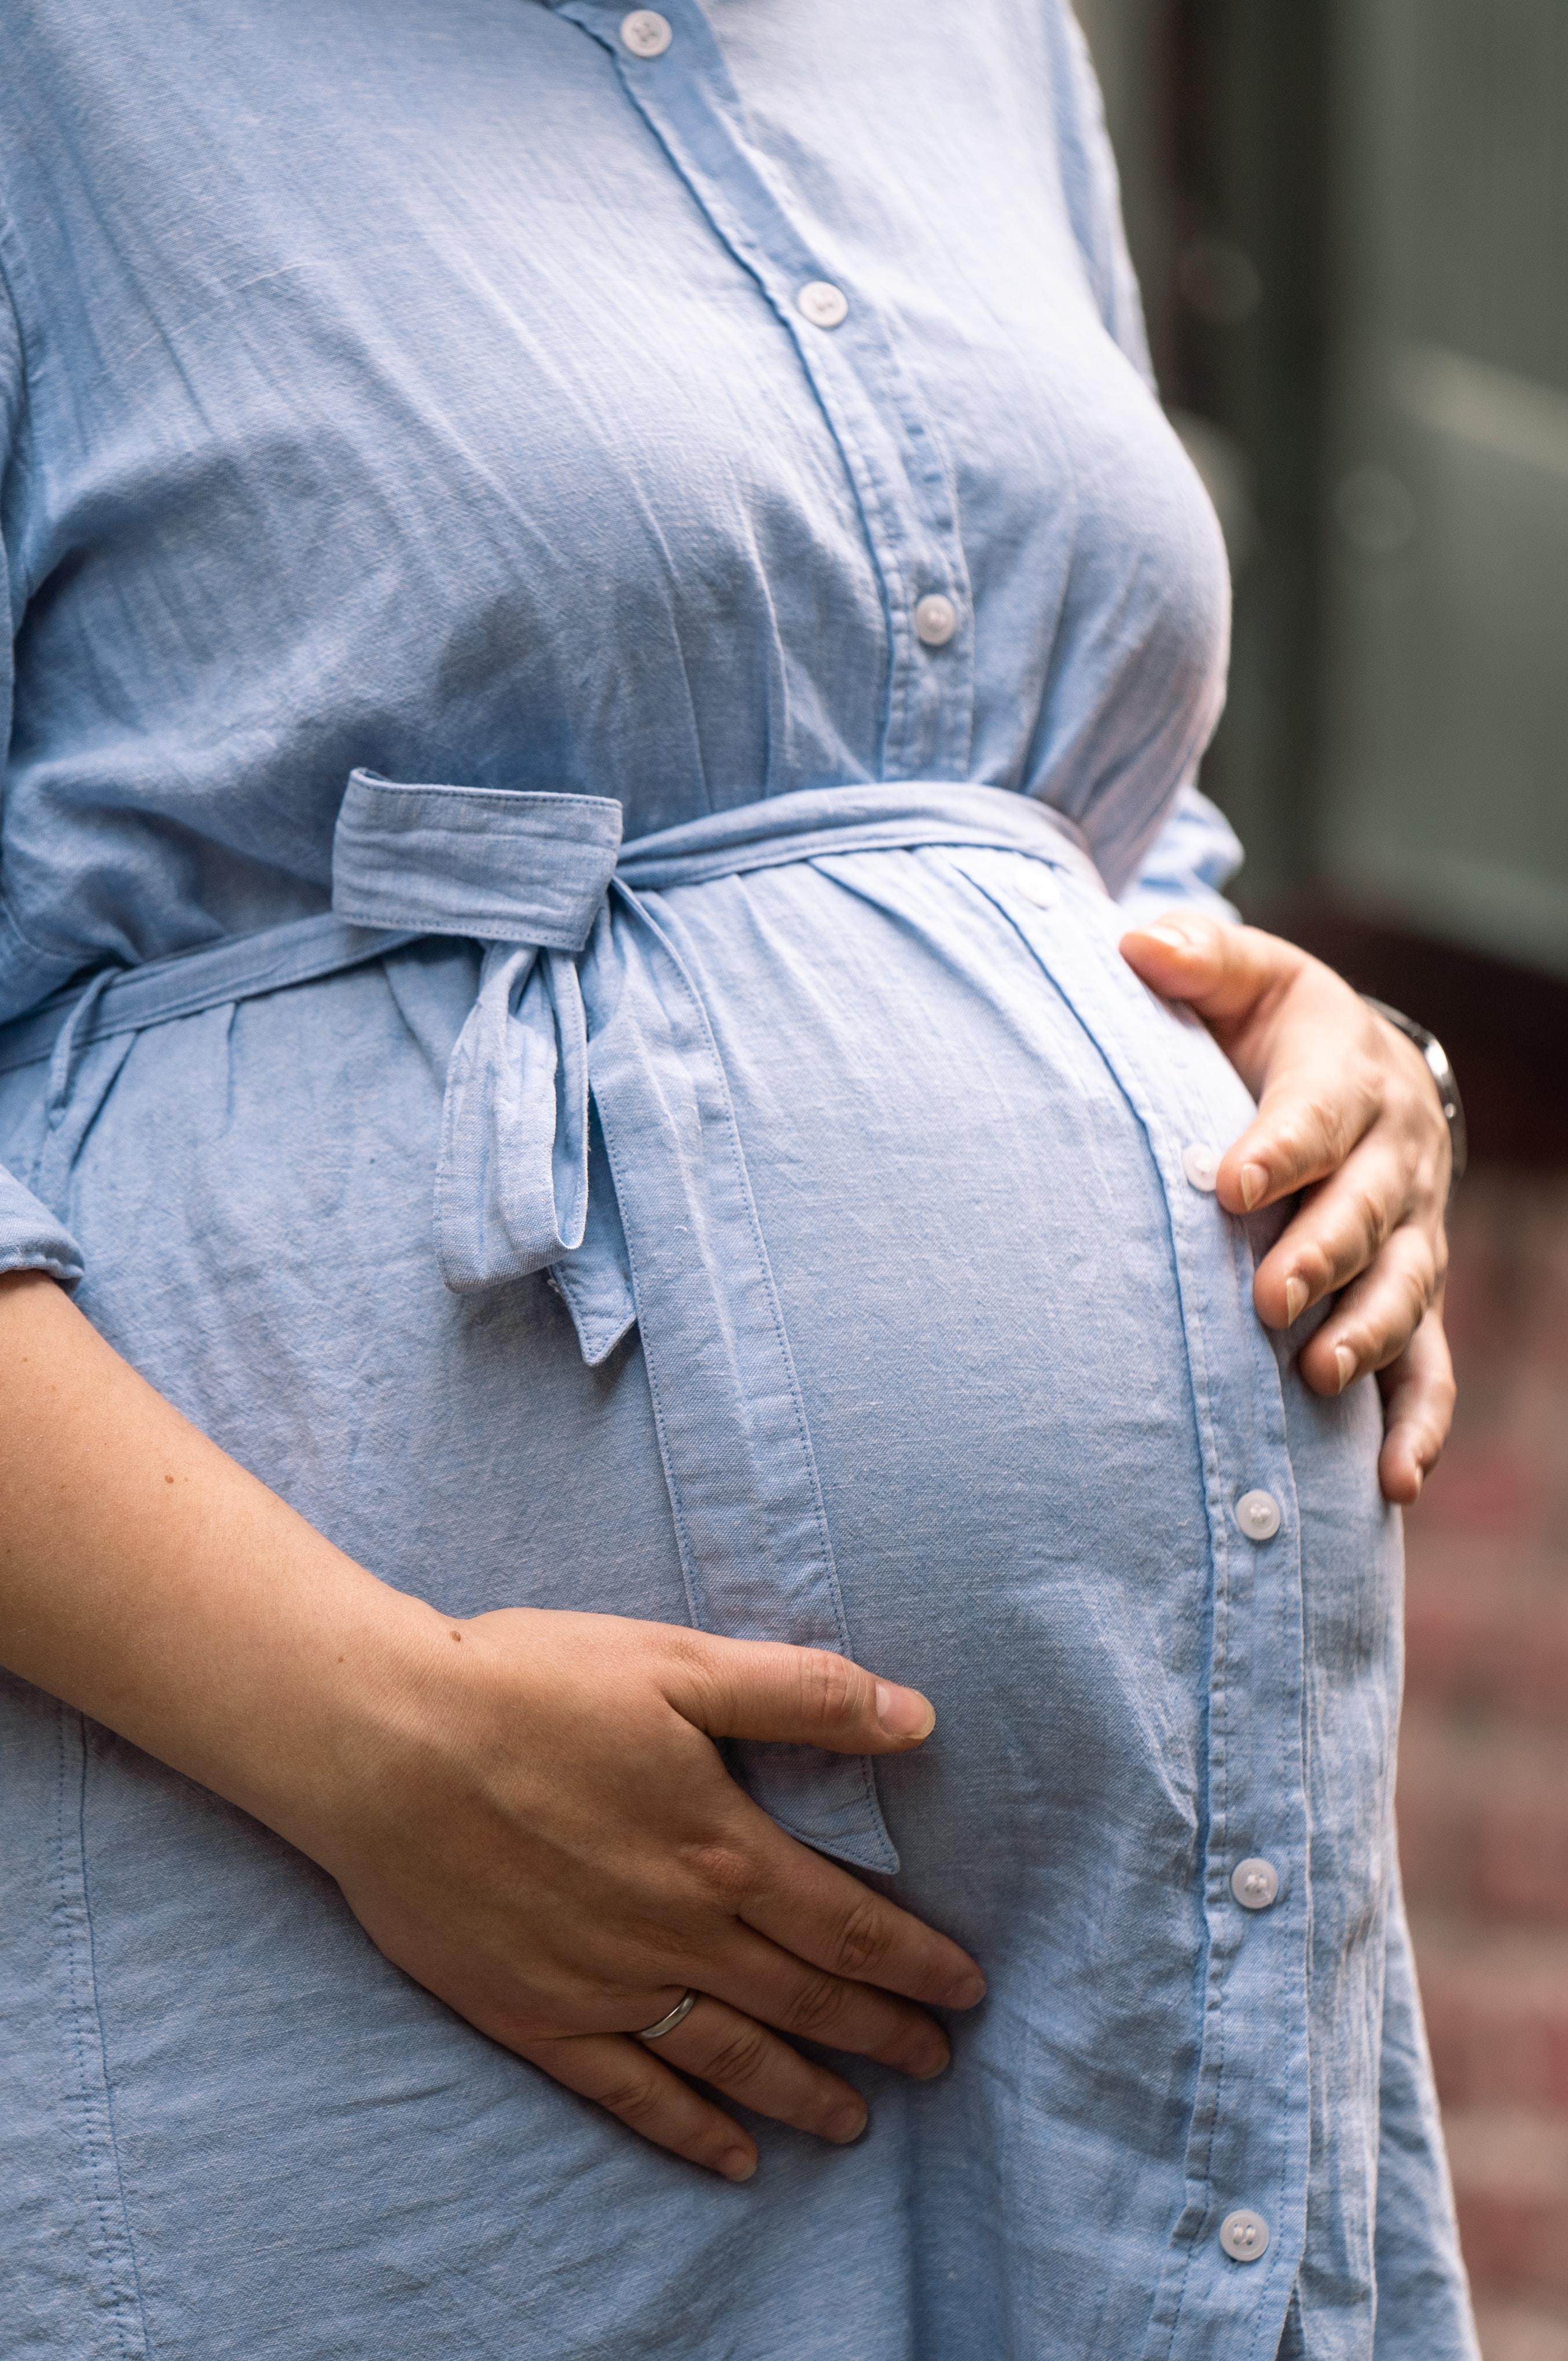 Stan przedrzucawkowy - objawy. Na co zwrócić uwagę? Czym jest stan przedrzucawkowy w ciąży? Czy stanowi zagrożenie dla kobiety w ciąży?